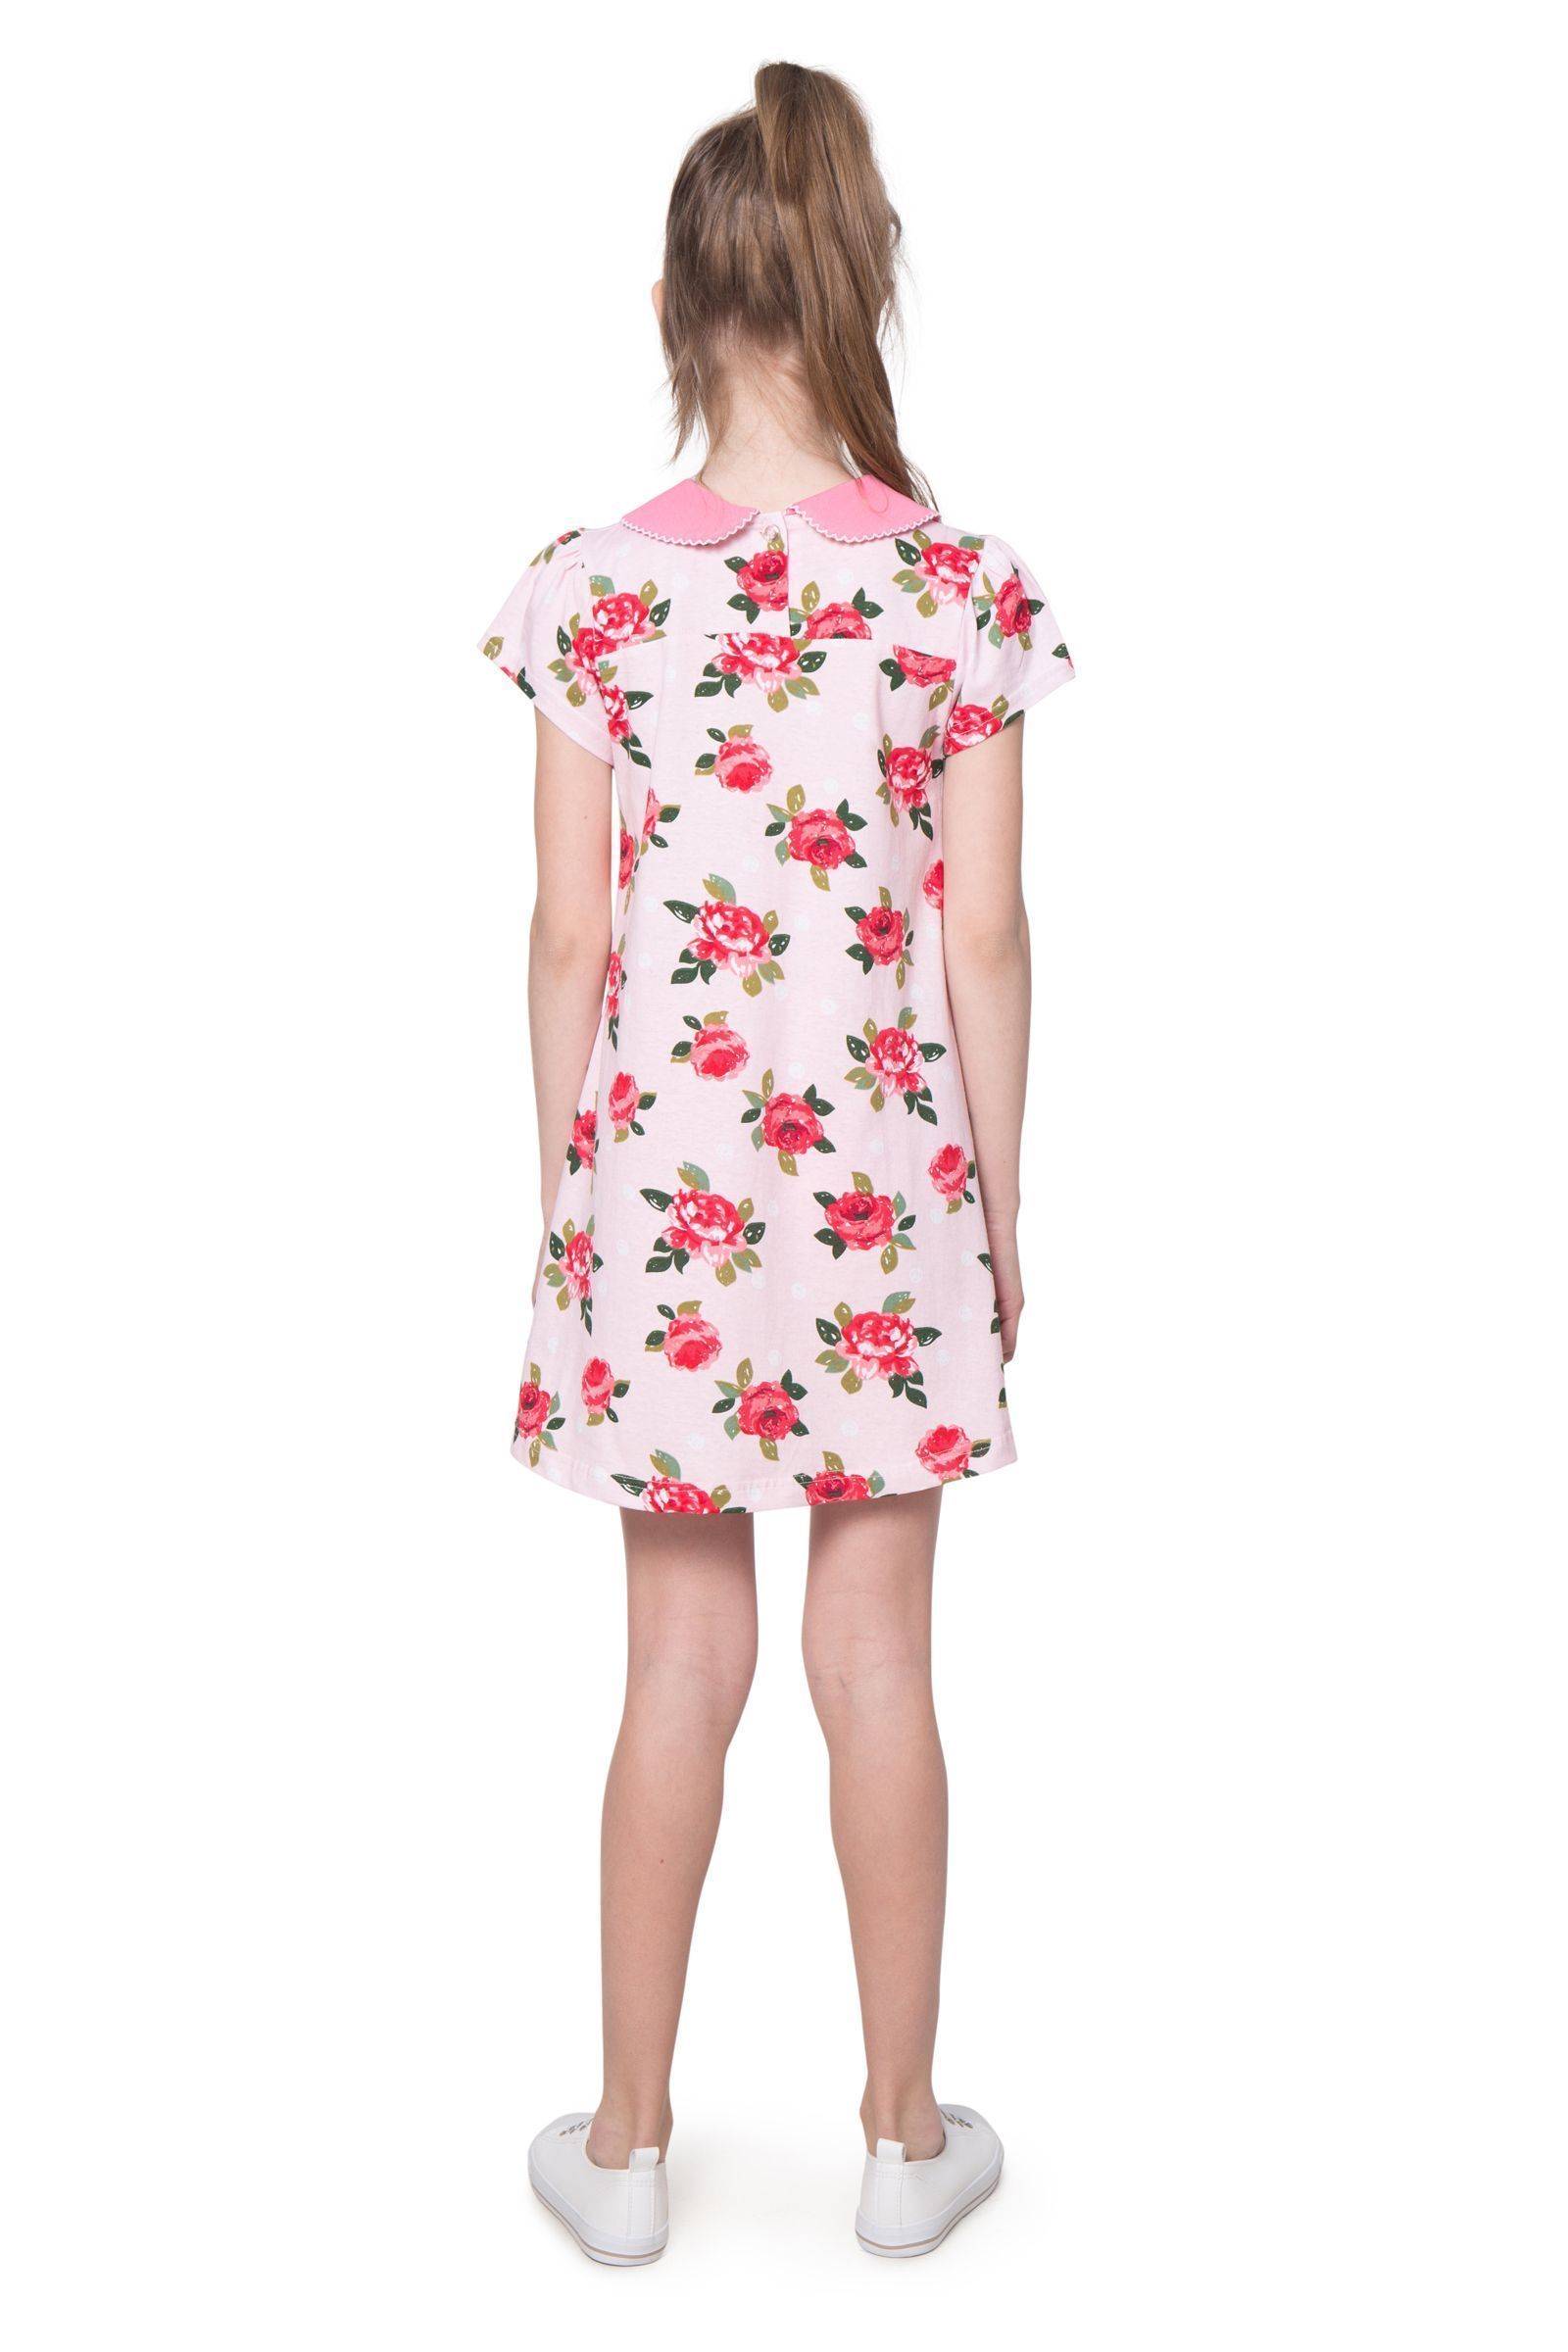 Платье-ПЛ02-3239 оптом от производителя детской одежды 'Алёна'